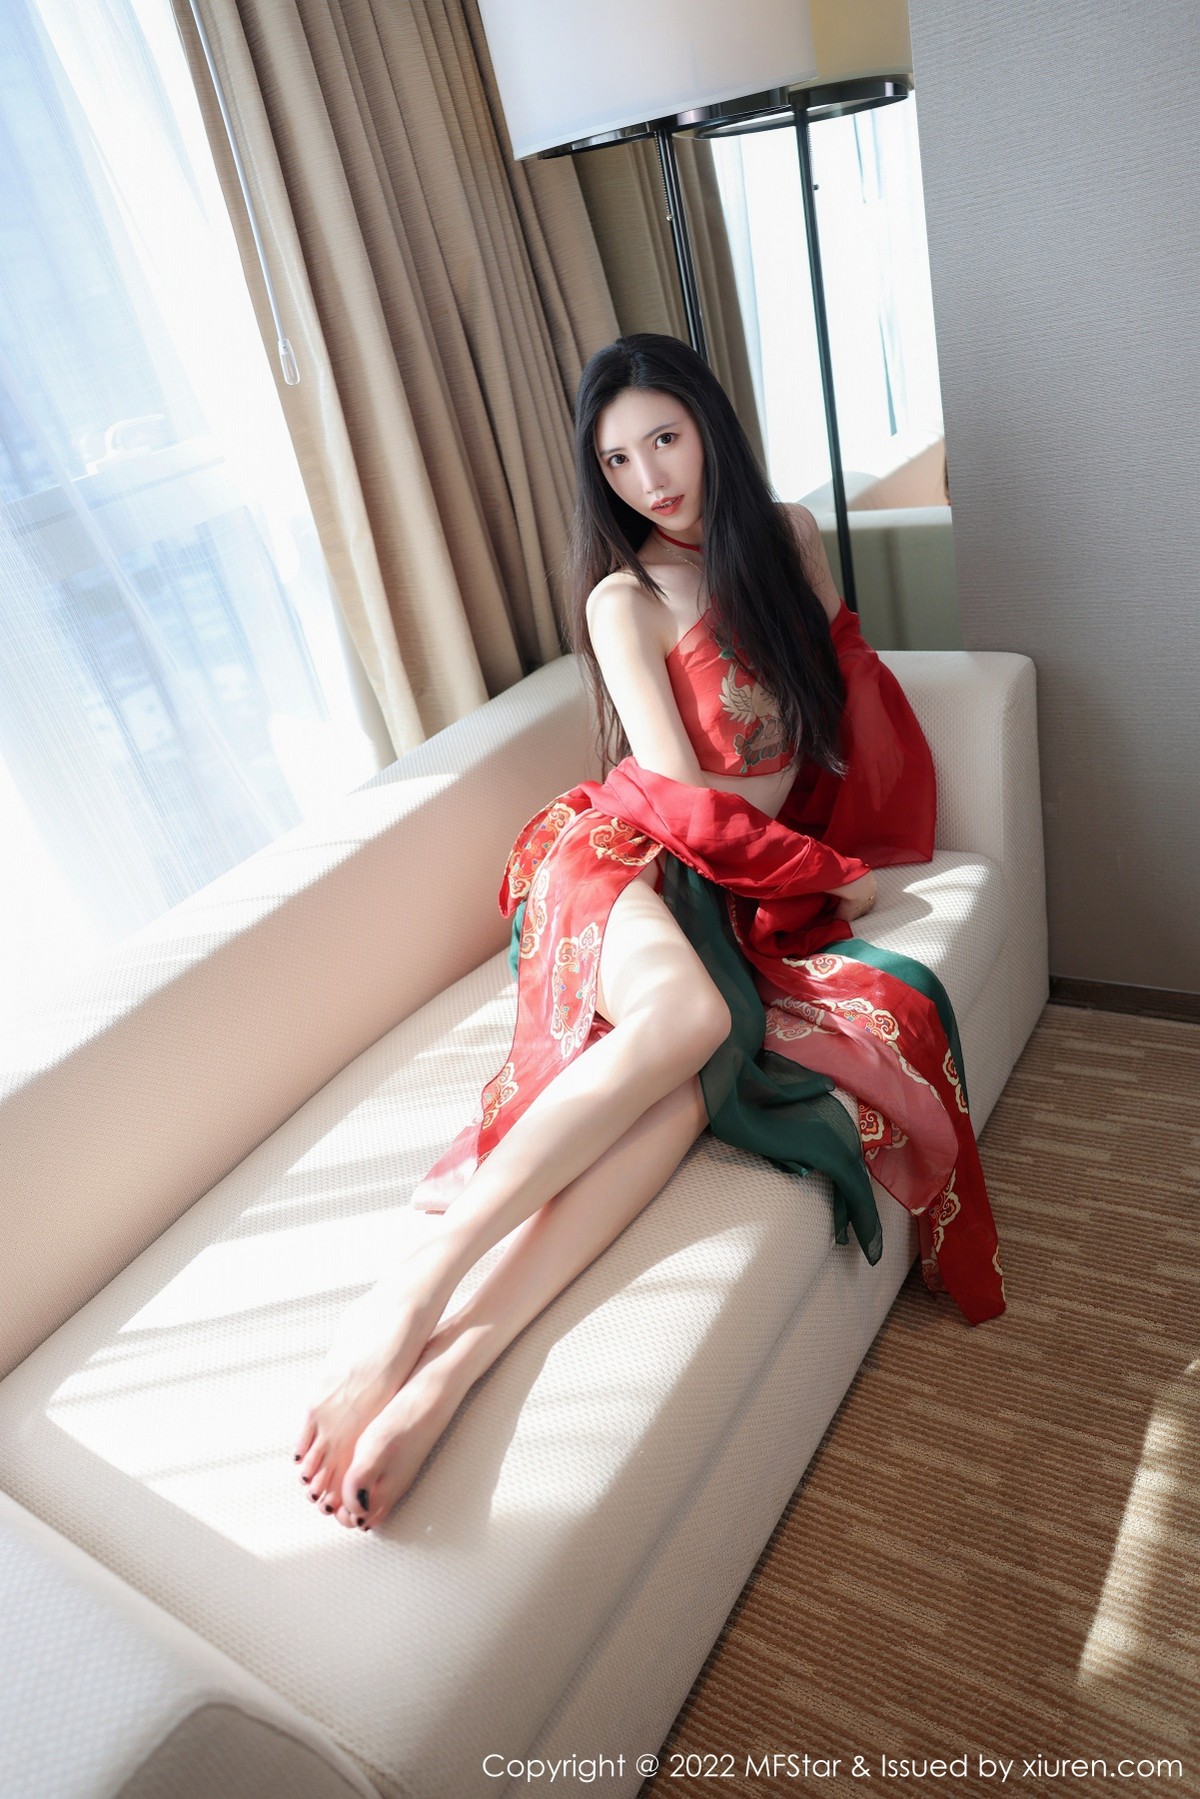 新人模特吴思晚红色古典薄纱服饰配性感肚兜迷人诱惑写真